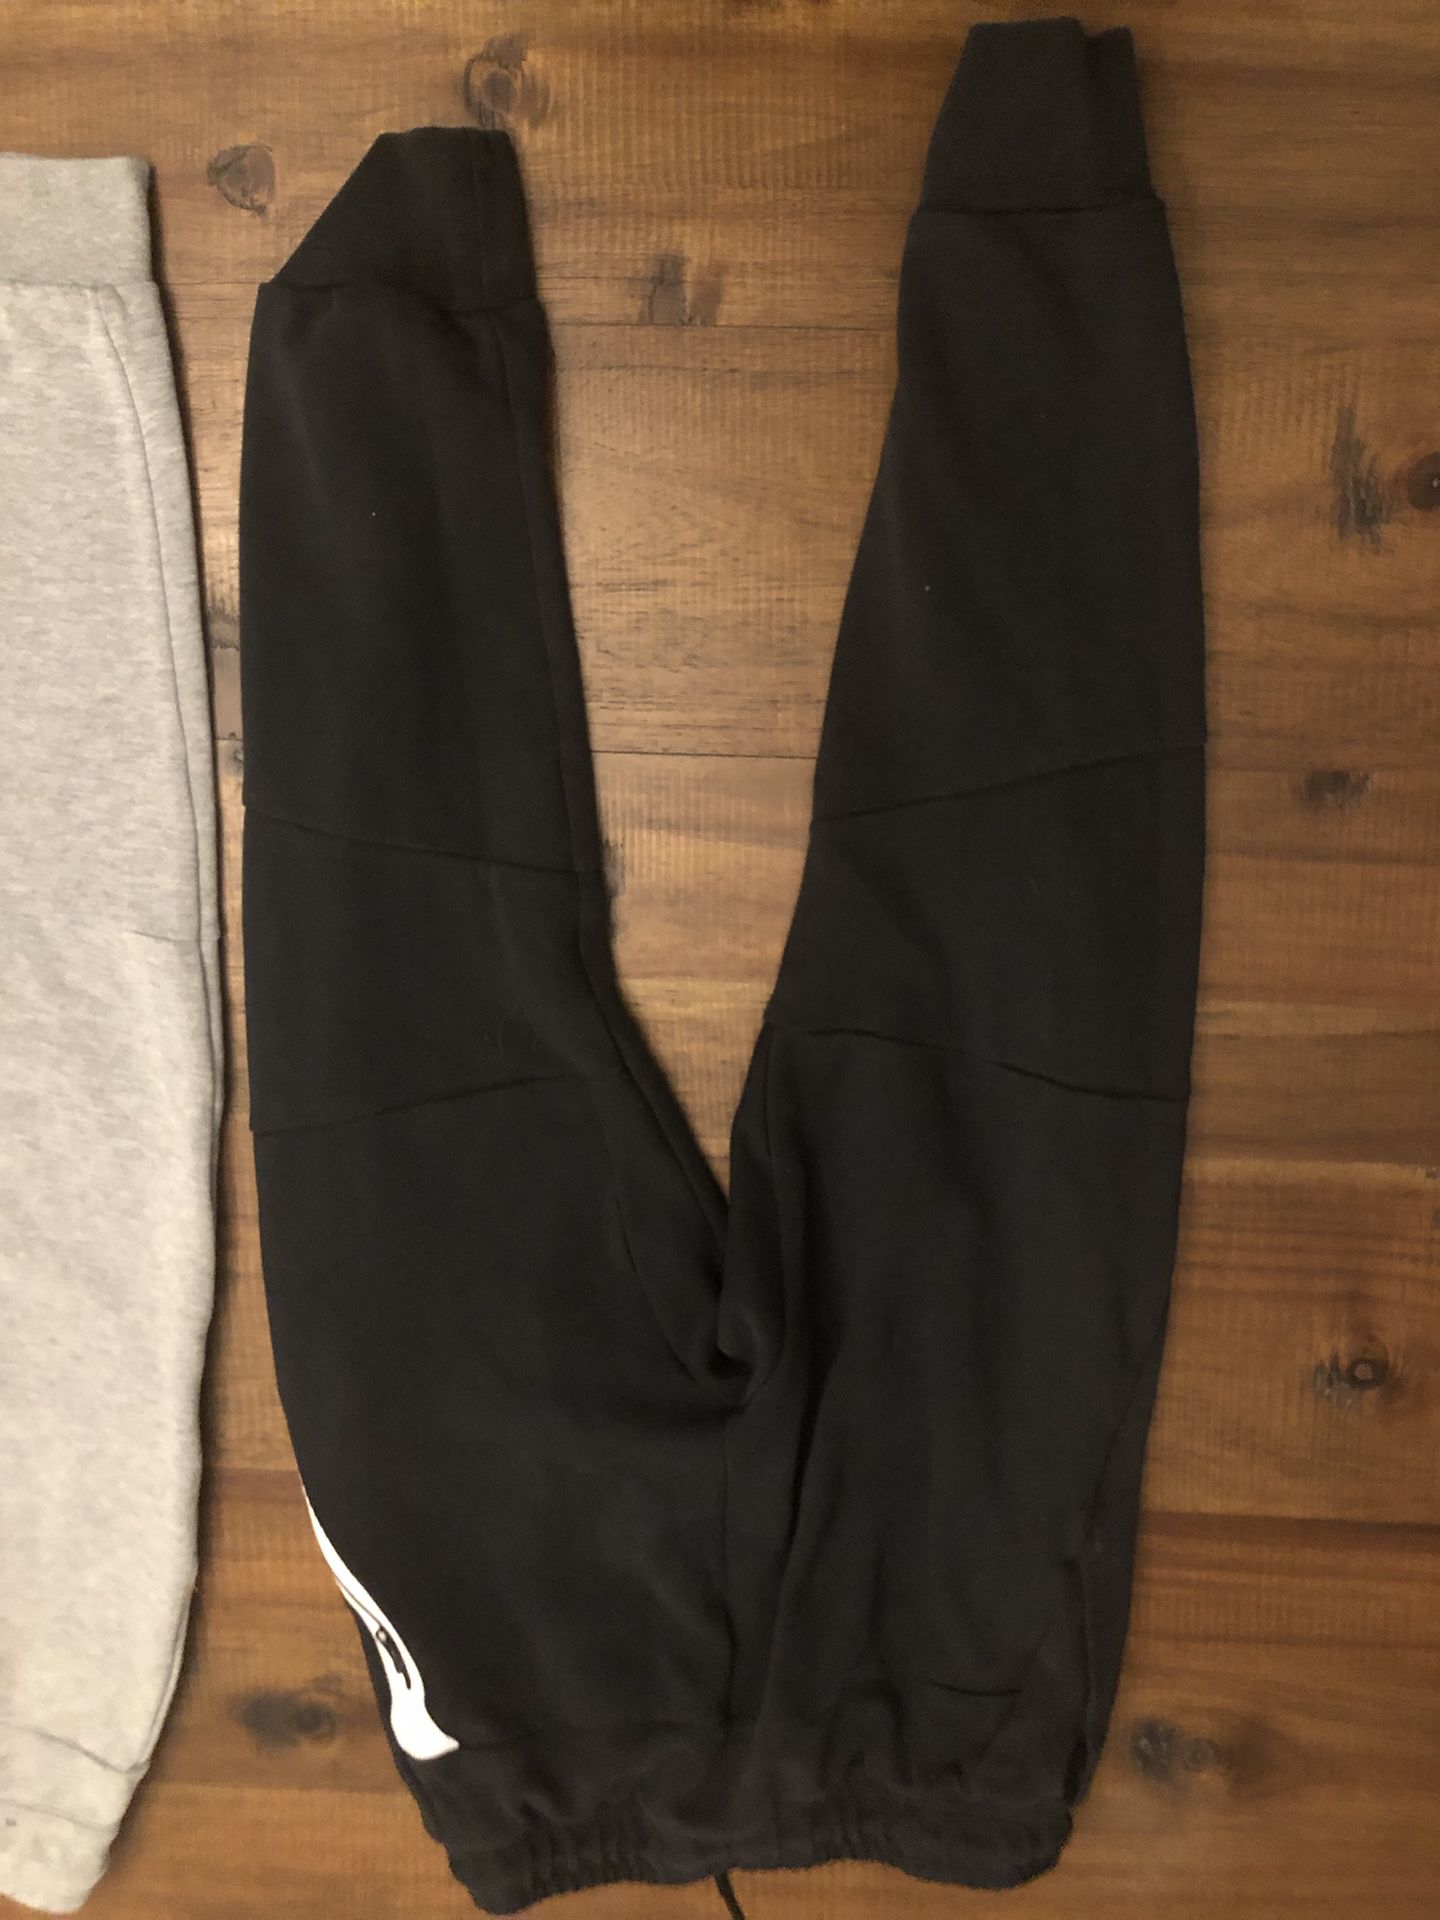 Two Nike Sportswear Tech Fleece Boys Jogger Pants - Size Medium